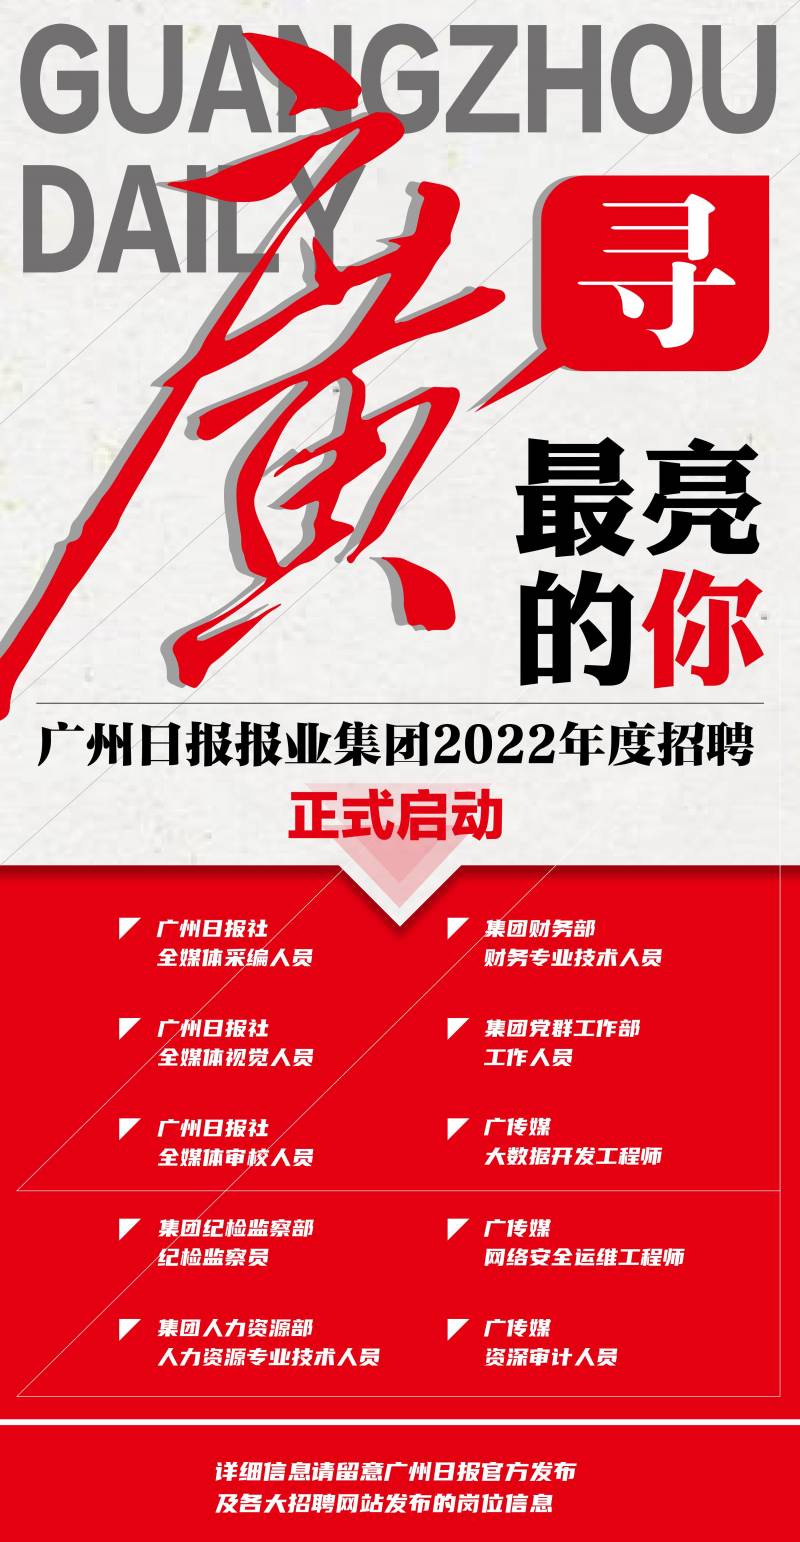 广州日报大洋网微博，2023，寻找媒体新锐星！招聘进行中